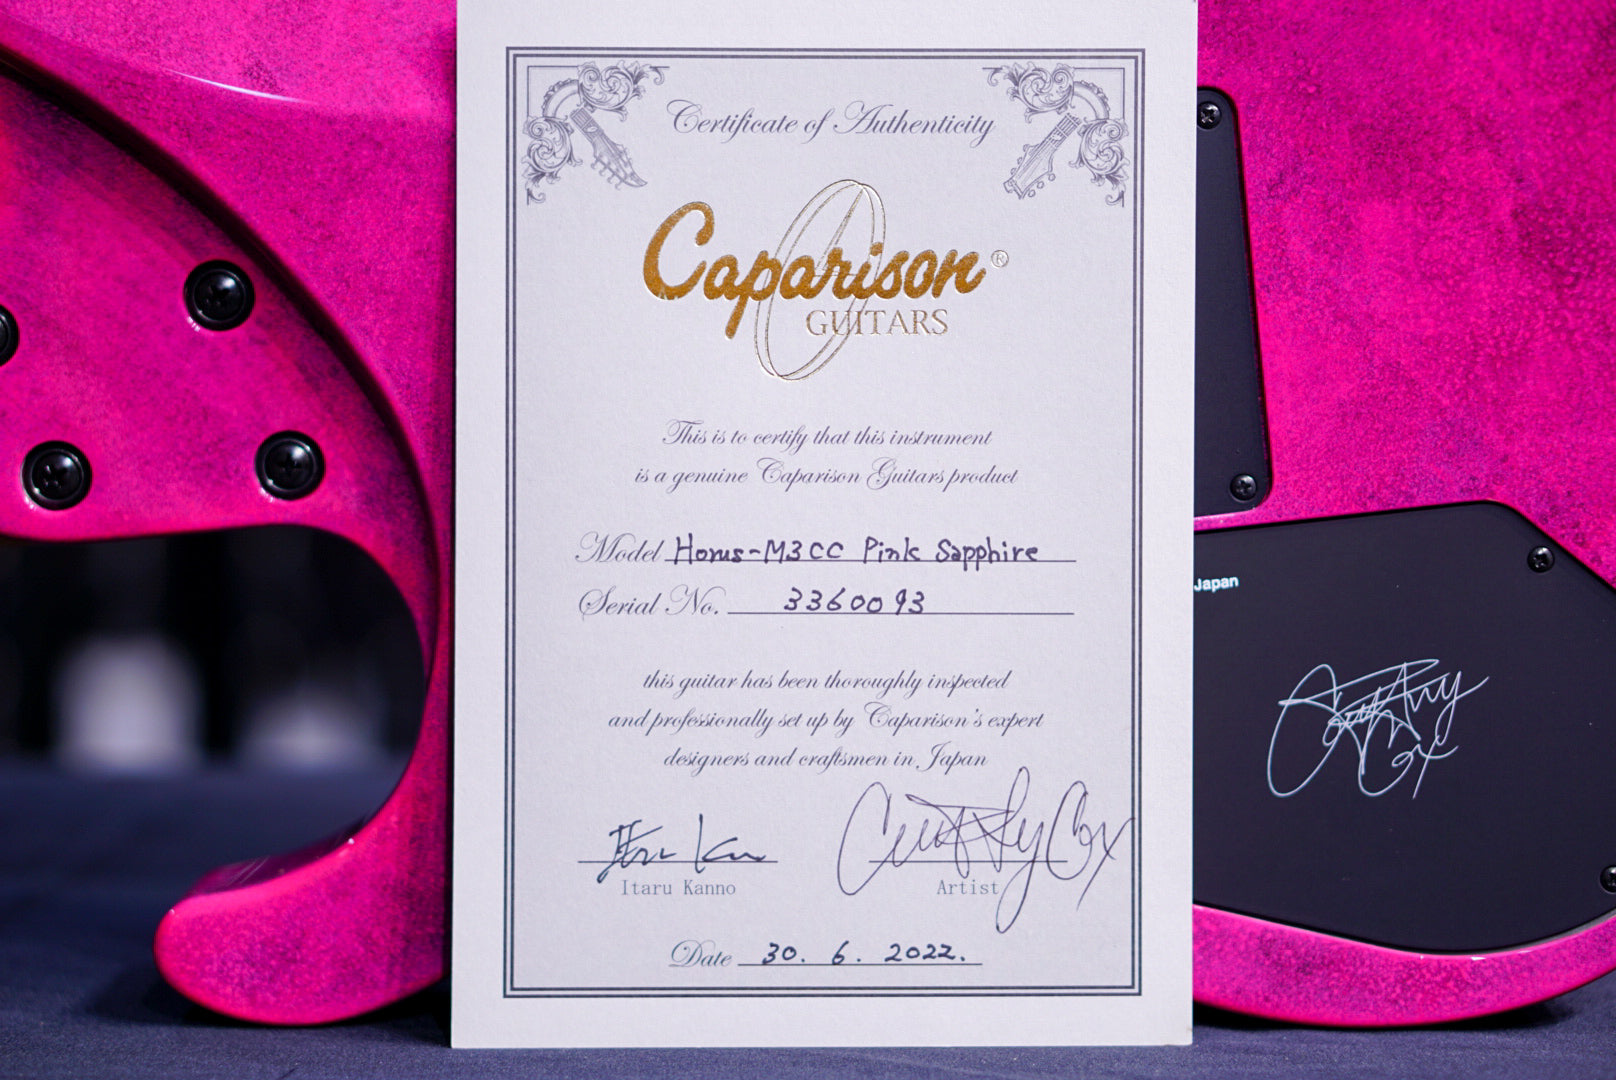 Caparison Horus-M3 COURTNEY COX SIGNATURE Pink Sapphire 3360093 - HIENDGUITAR   Caparison GUITAR